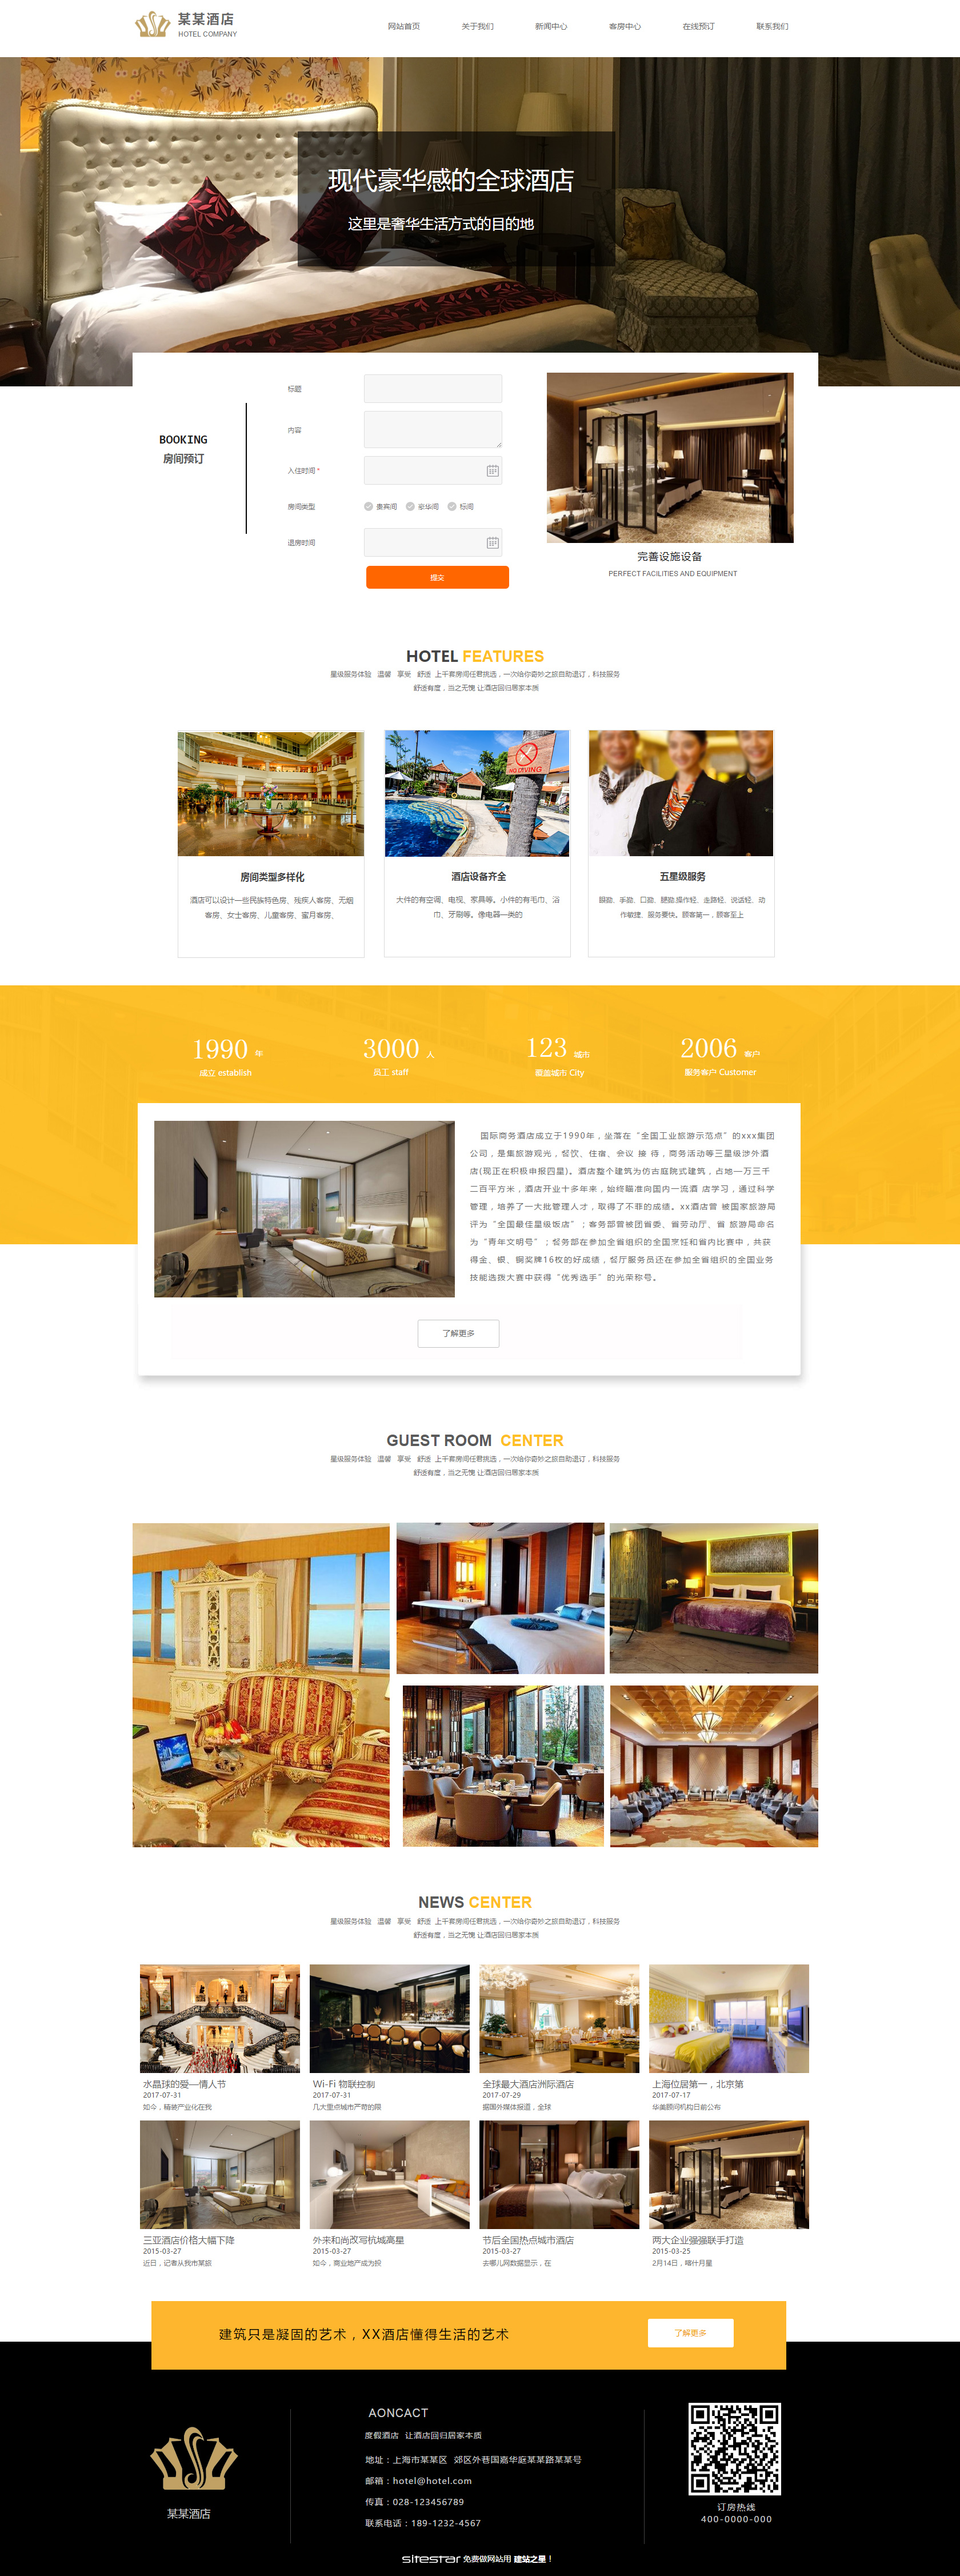 酒店网站模板-hotels-1106592